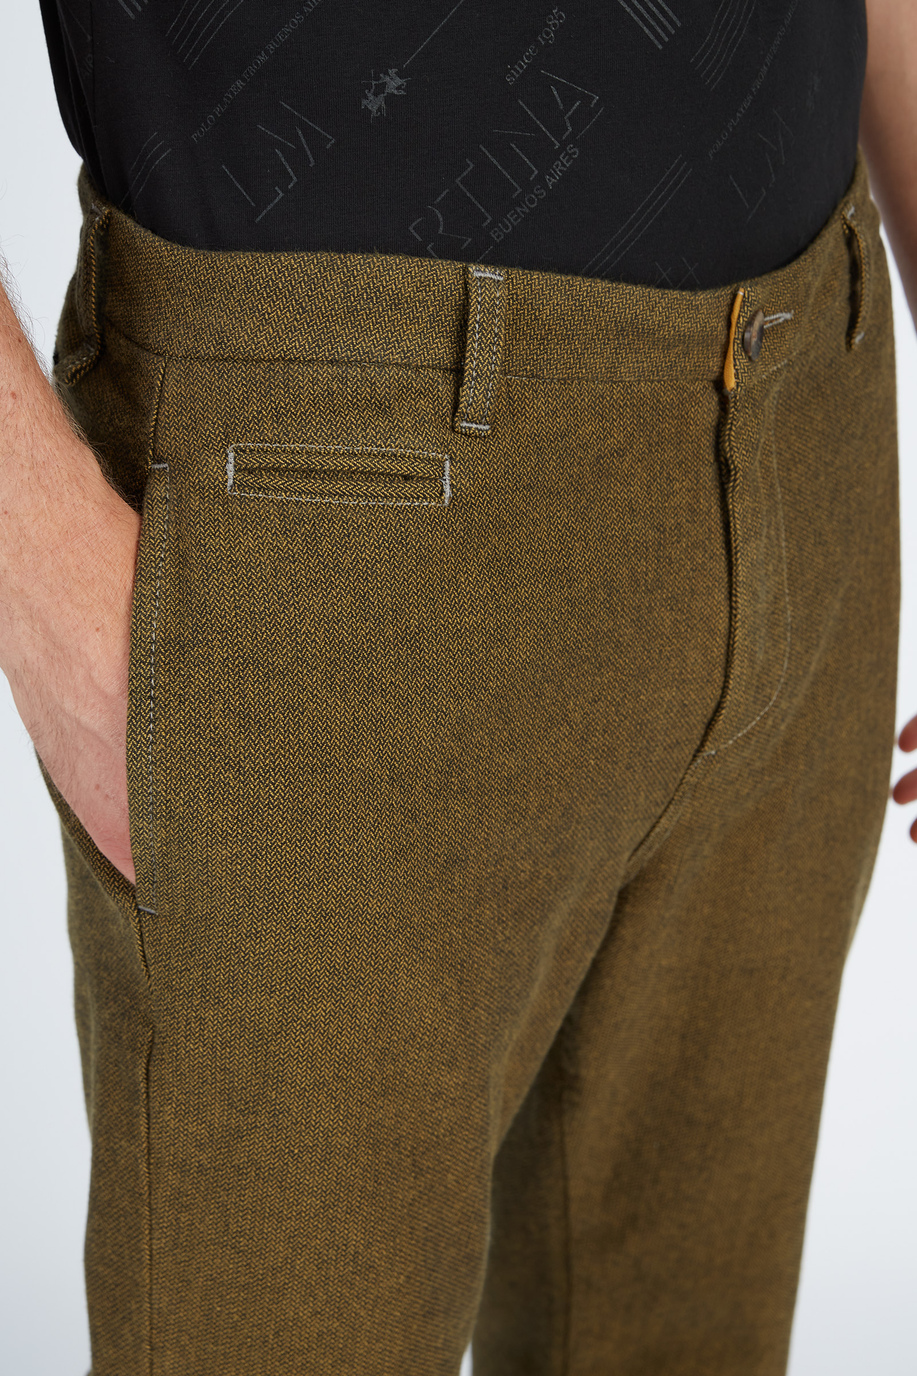 Pantalone da uomo modello 5 tasche in cotone regular fit